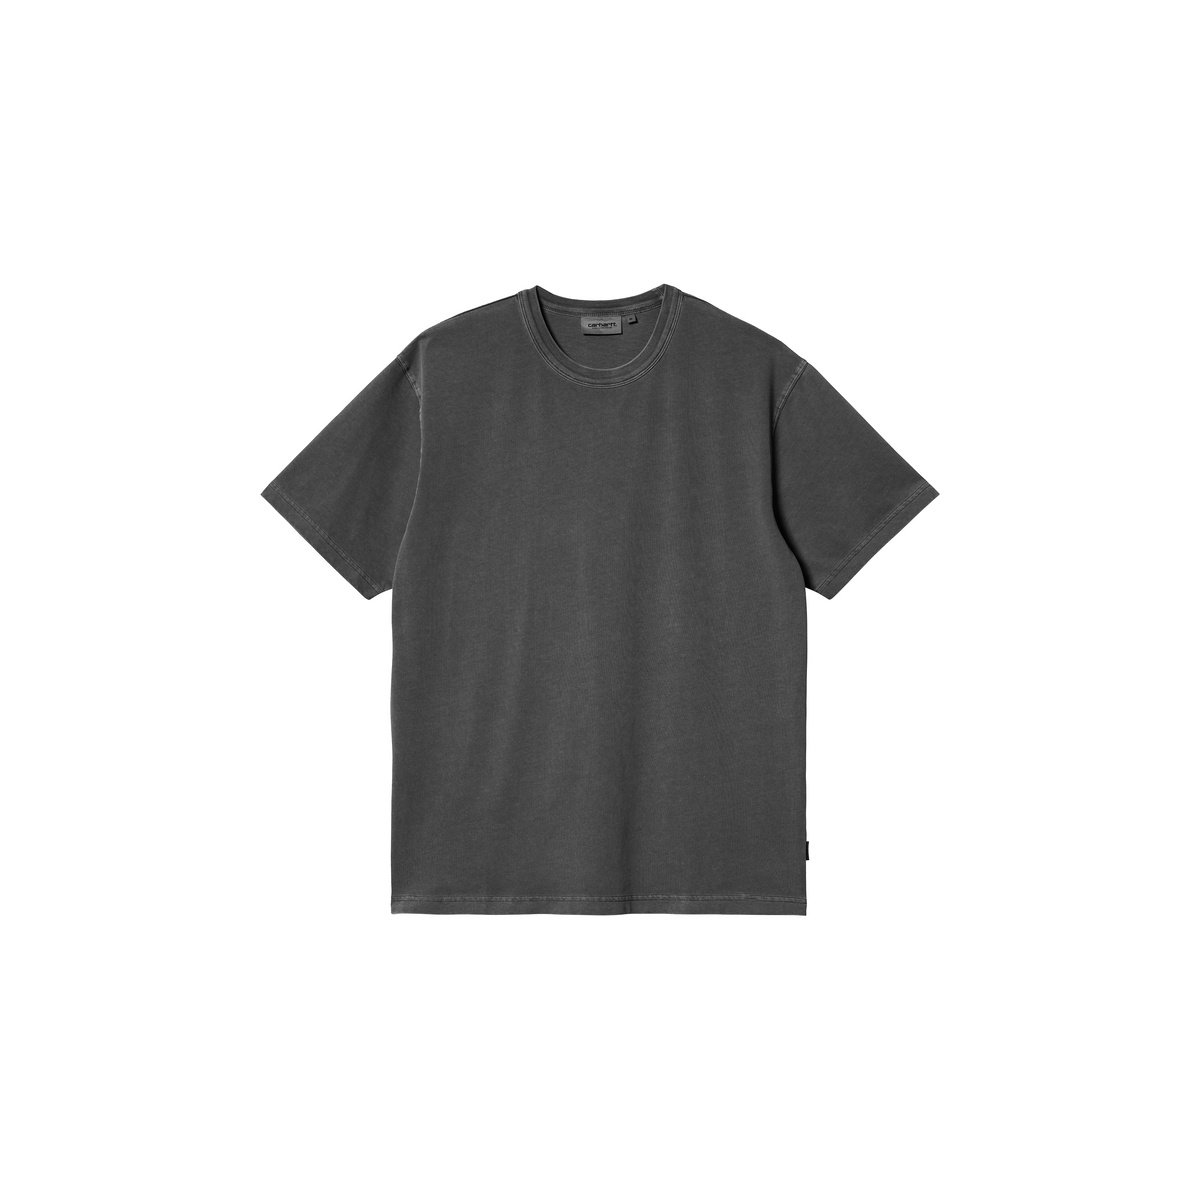 S/S Taos T-Shirt "Flint garment dyed"